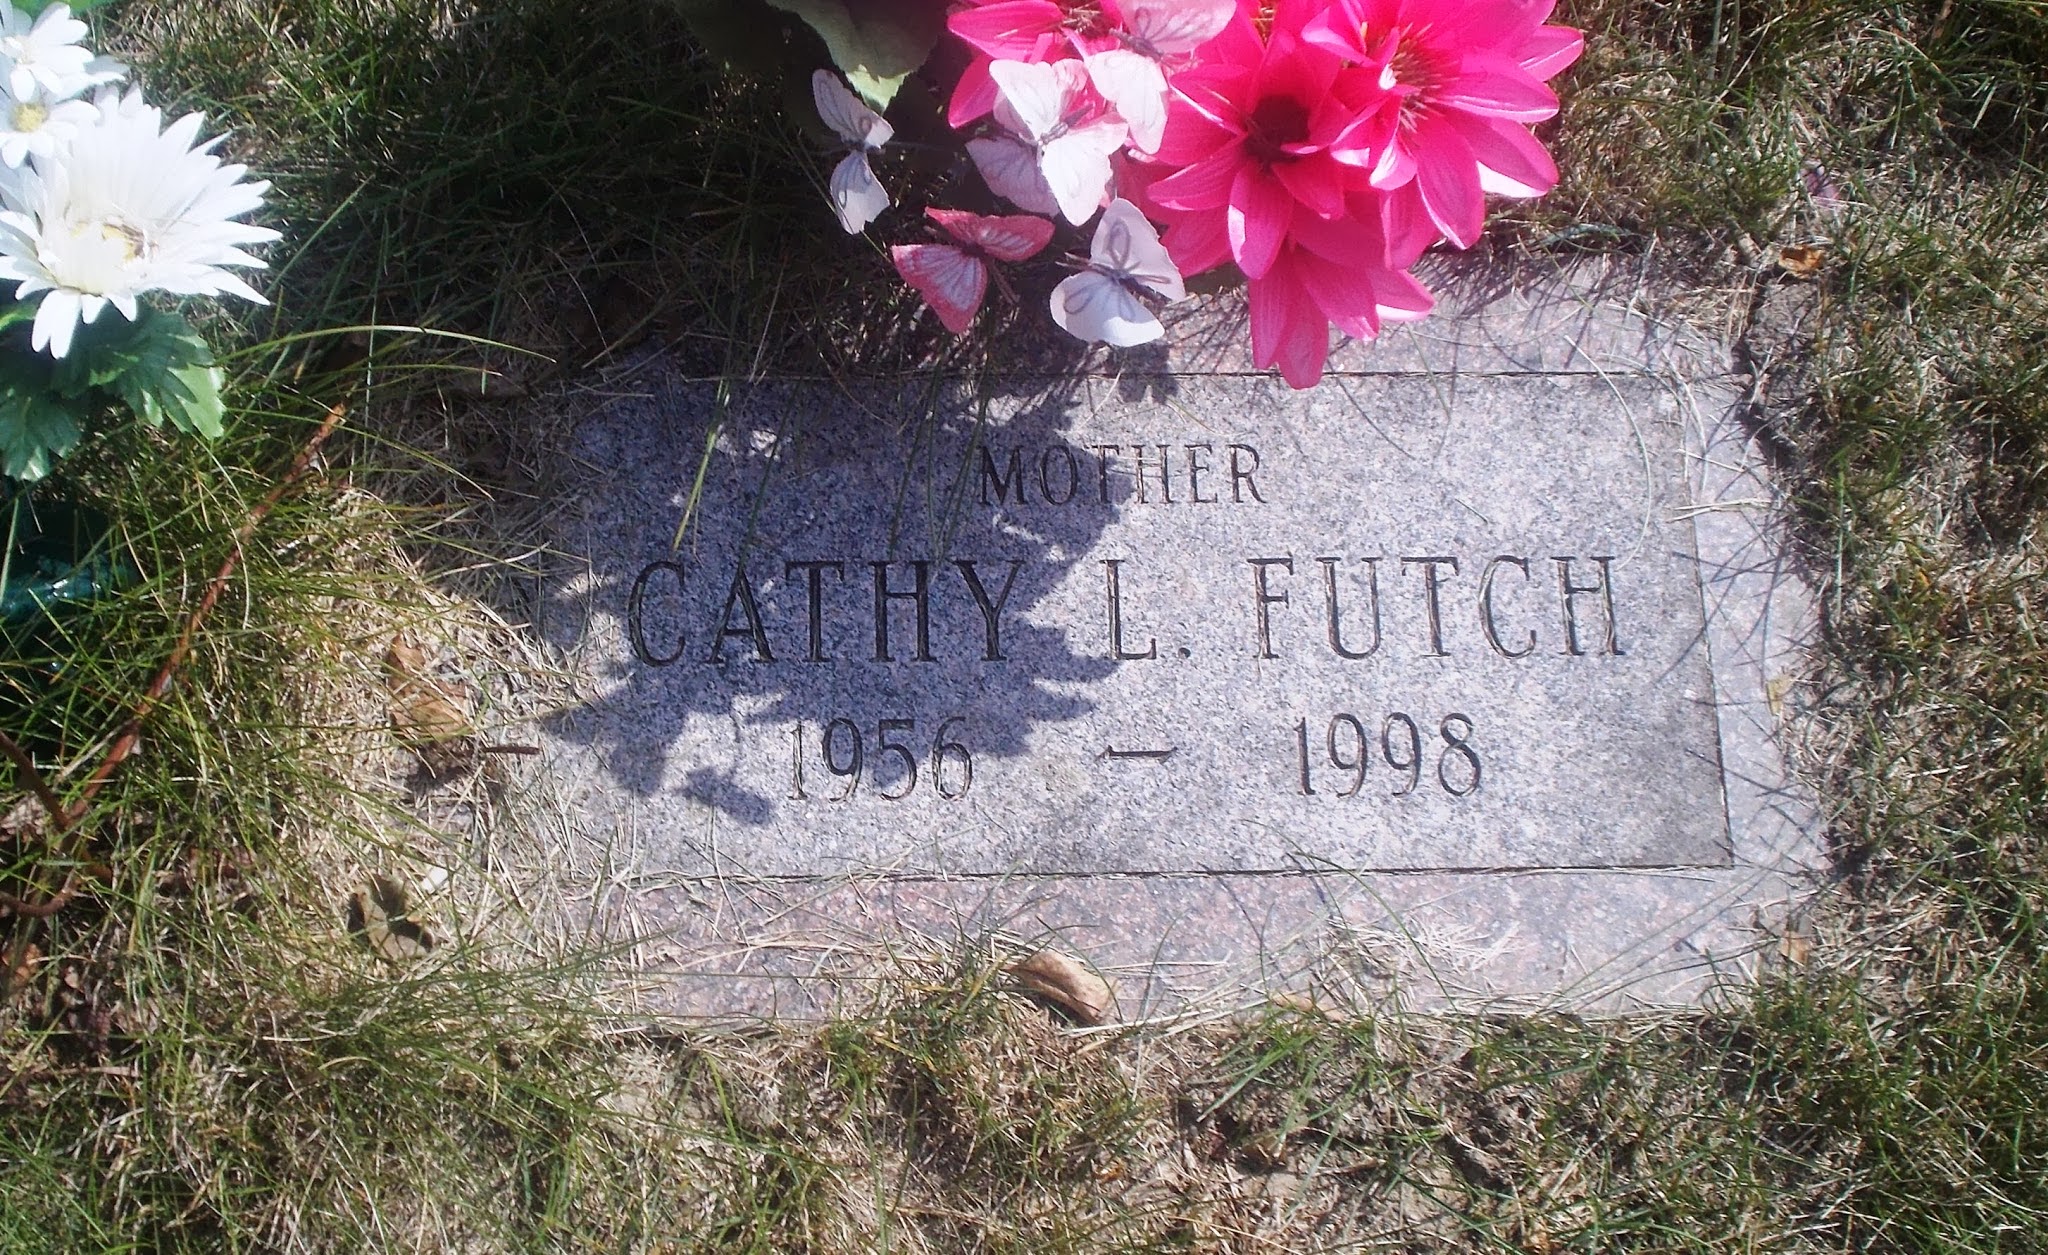 Cathy L Futch